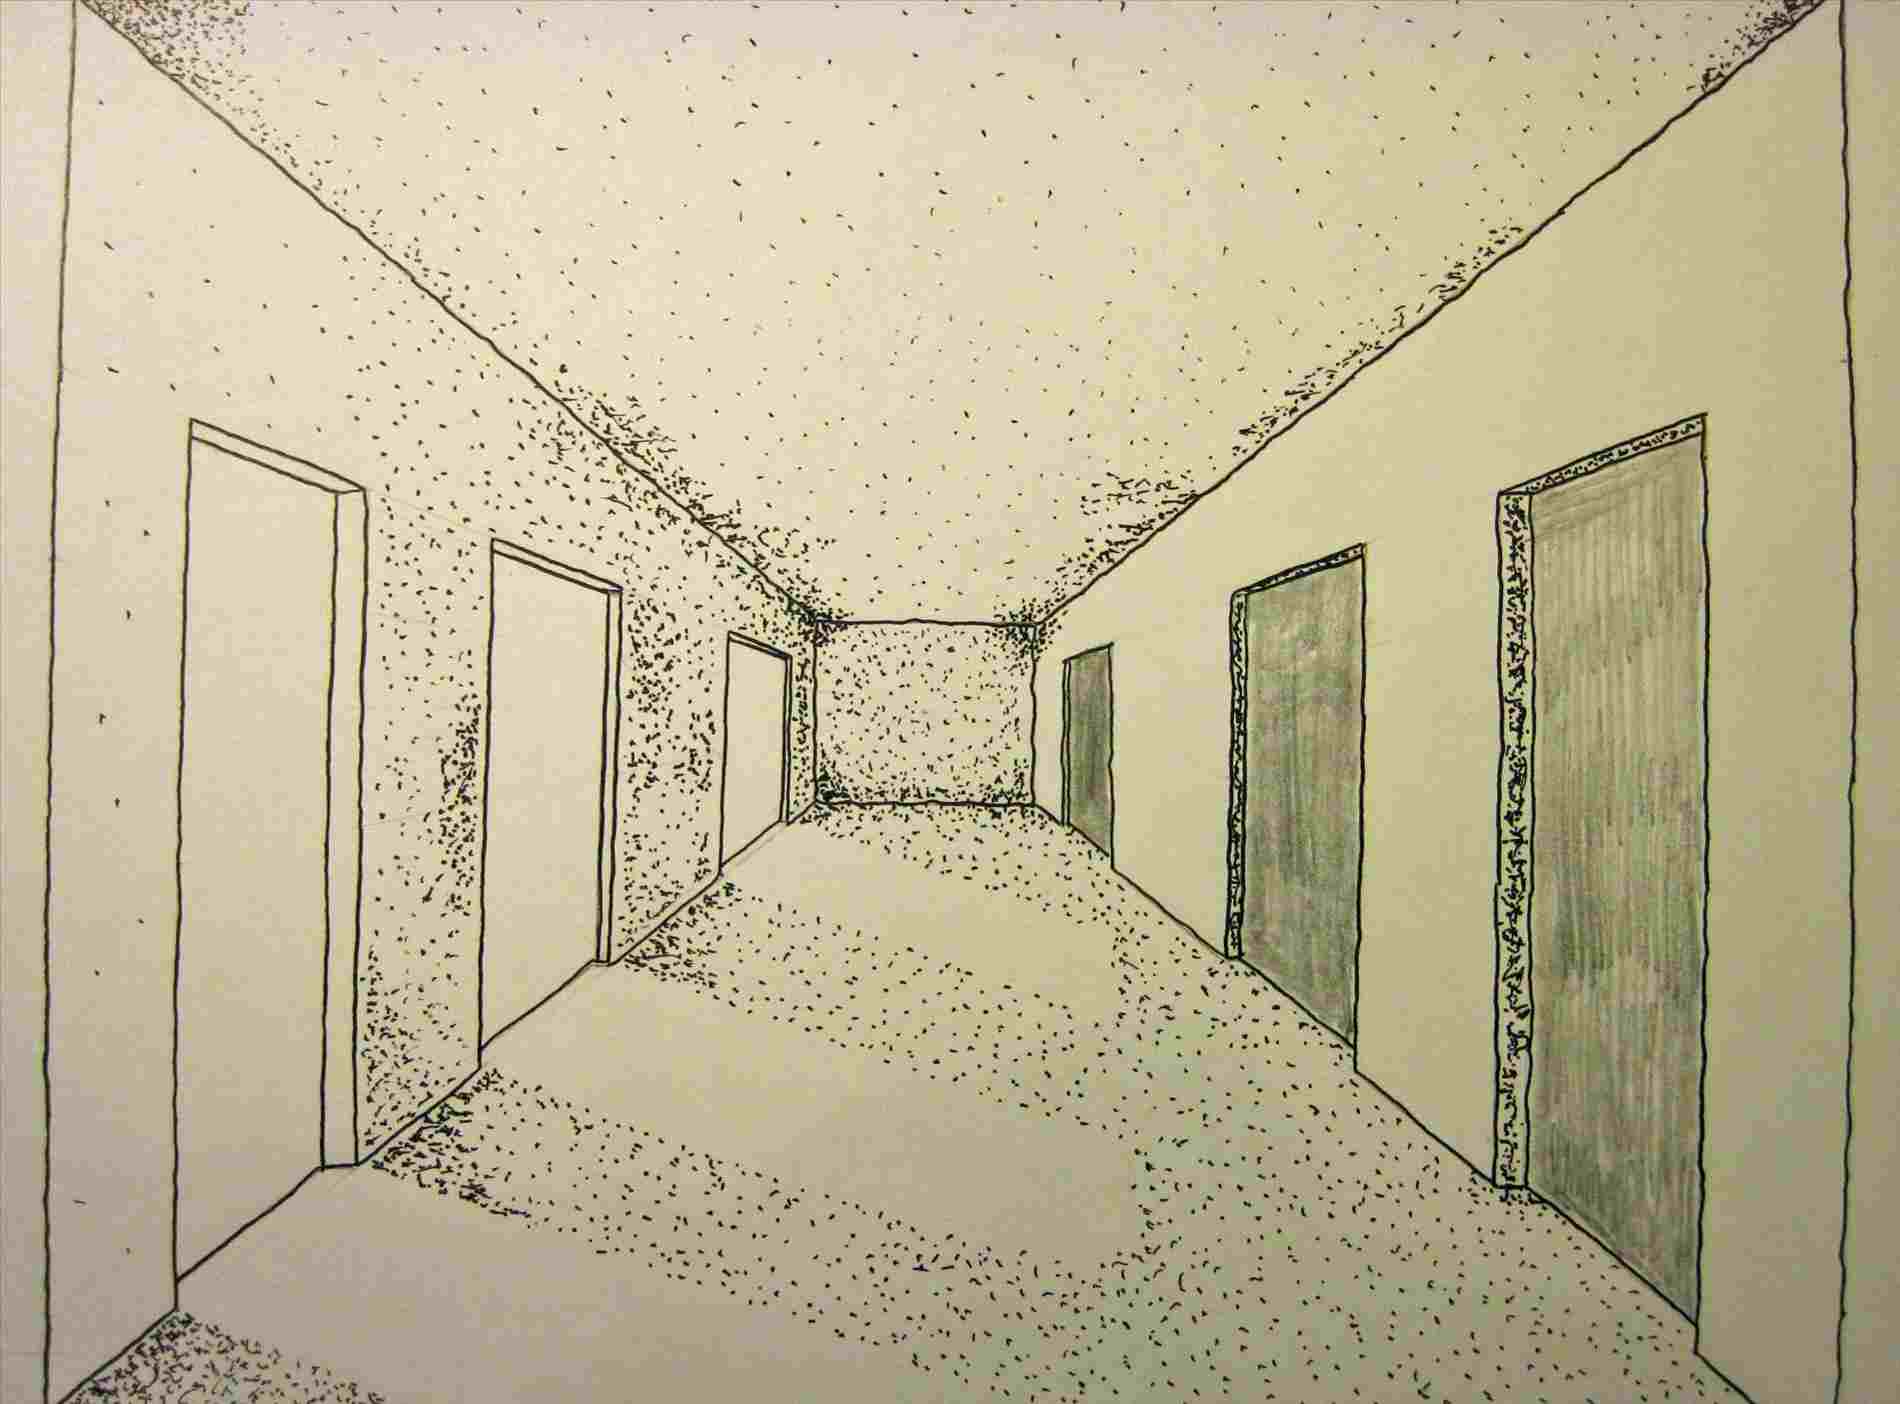 How To Draw A Hallway